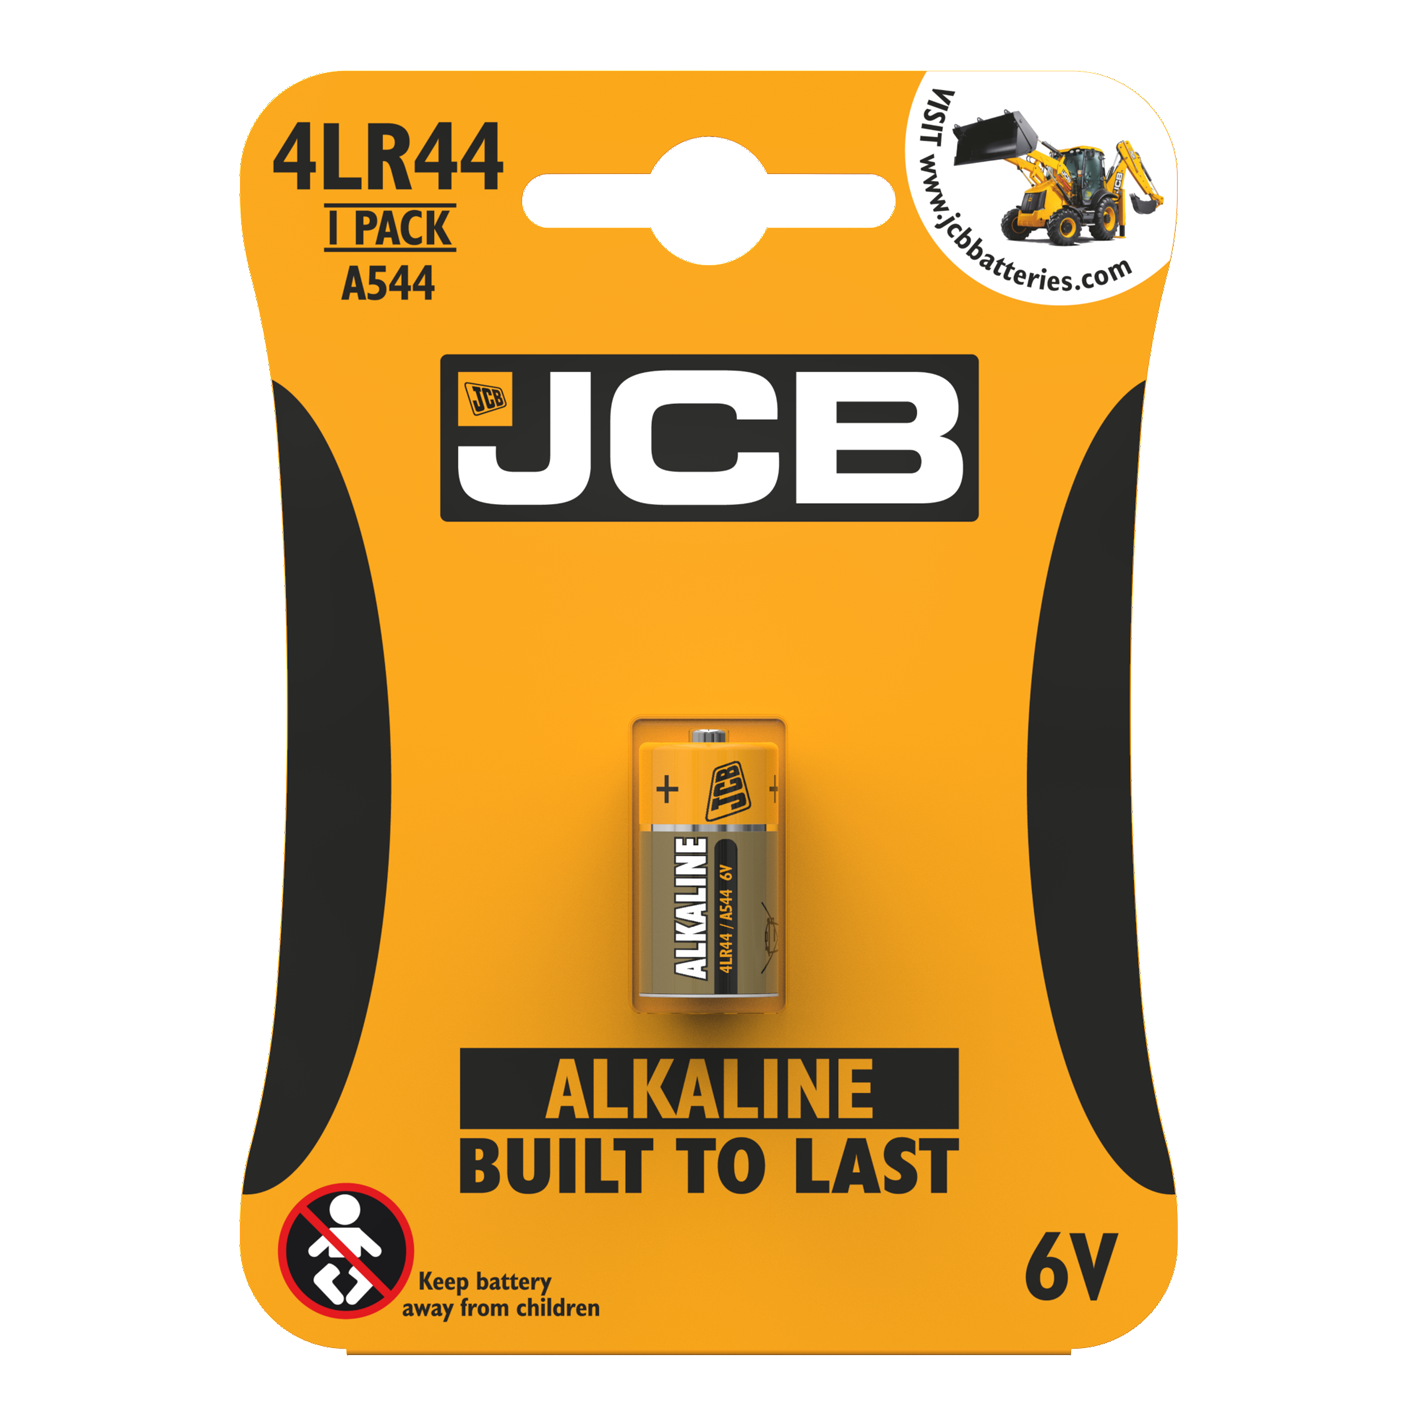 JCB 4LR44 Alkaline, Pack of 1